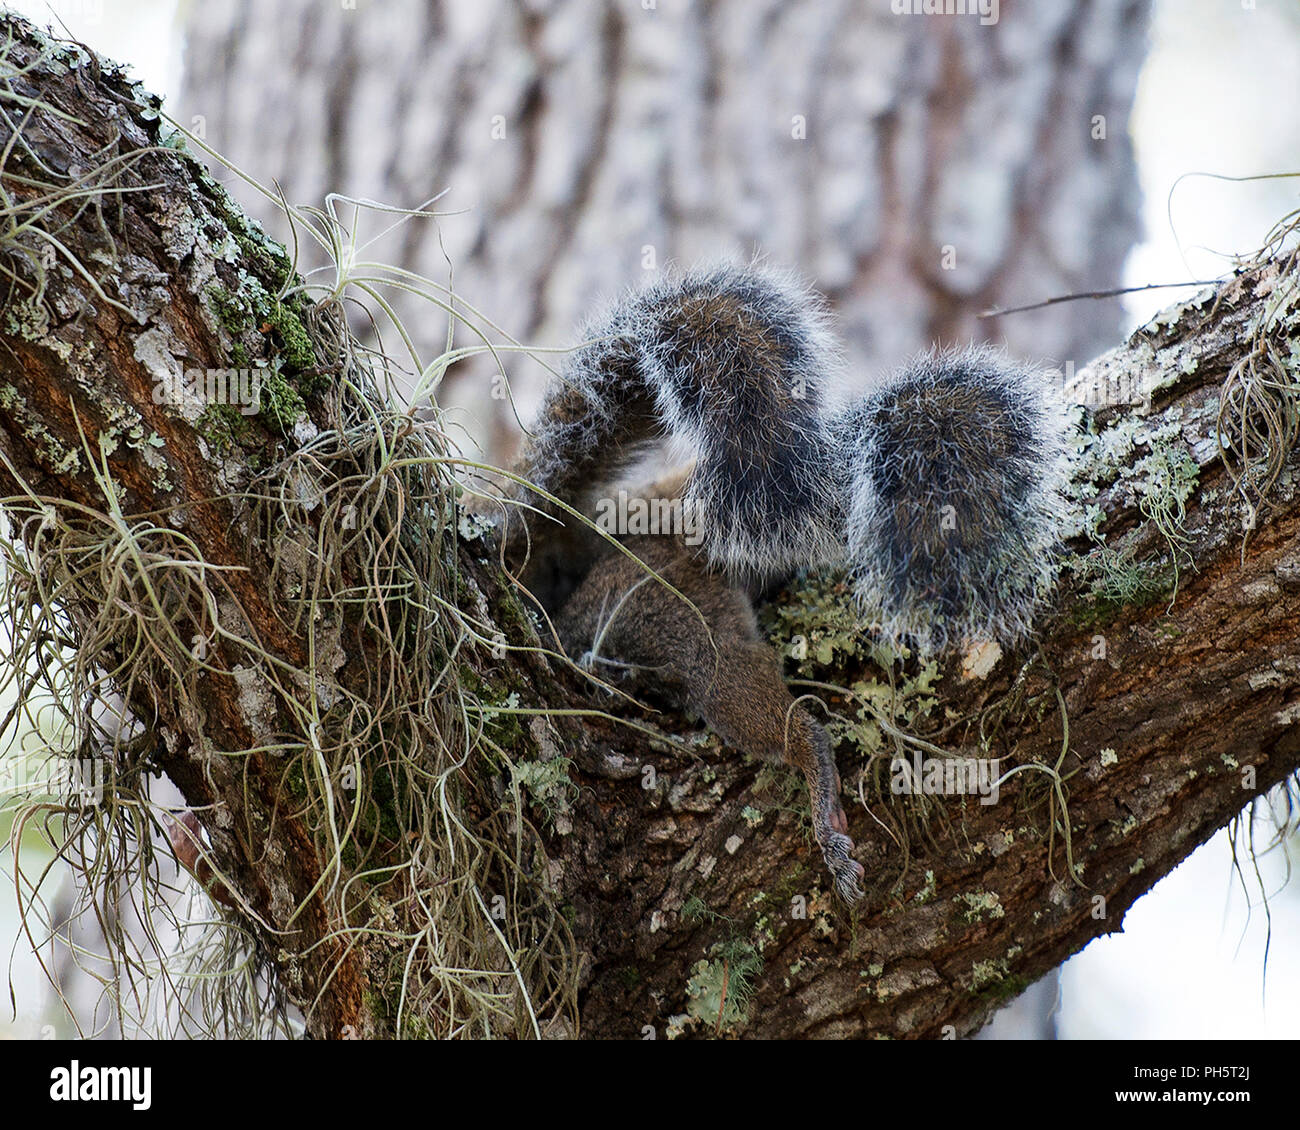 Eichhörnchen paar Paarung und seine Umgebung. Stockfoto